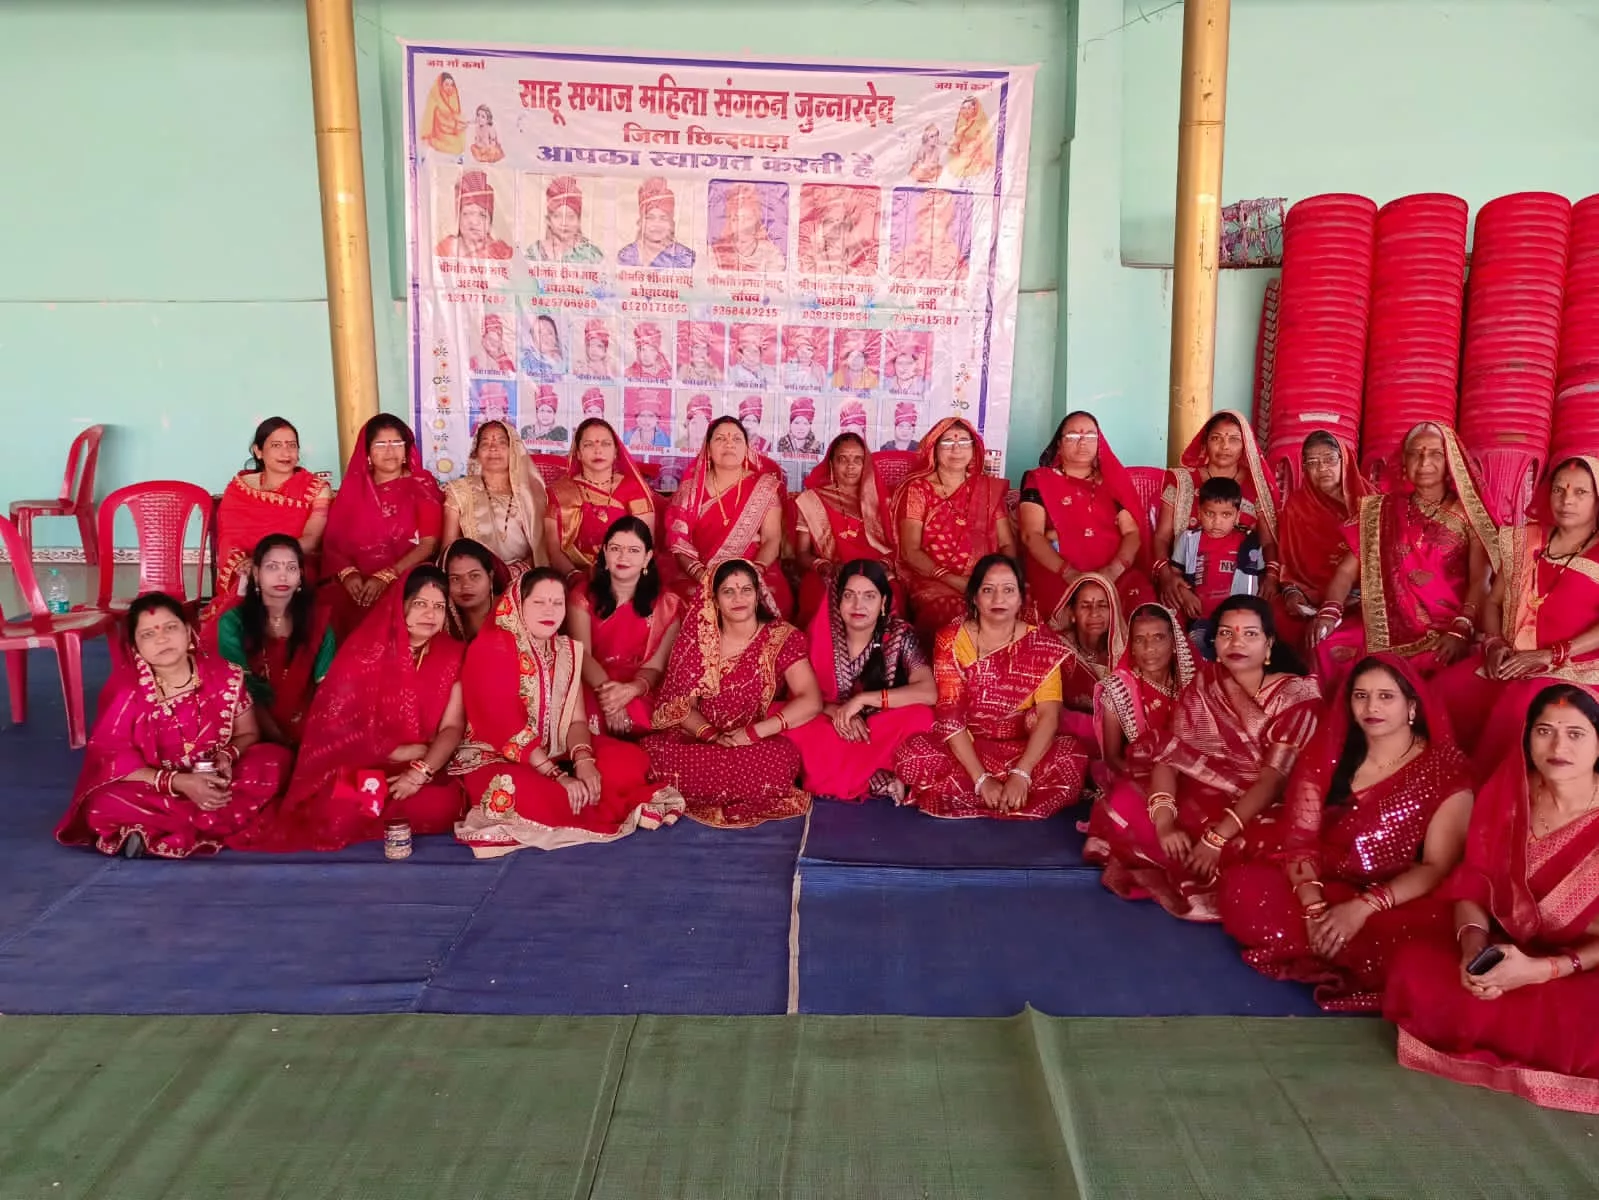 महिला साहू समाज ने हल्दी कुमकुम के जरिए दिया एकता का संदेश, बच्चों ने दी सांस्कृतिक कार्यक्रम की प्रस्तुति | New India Times